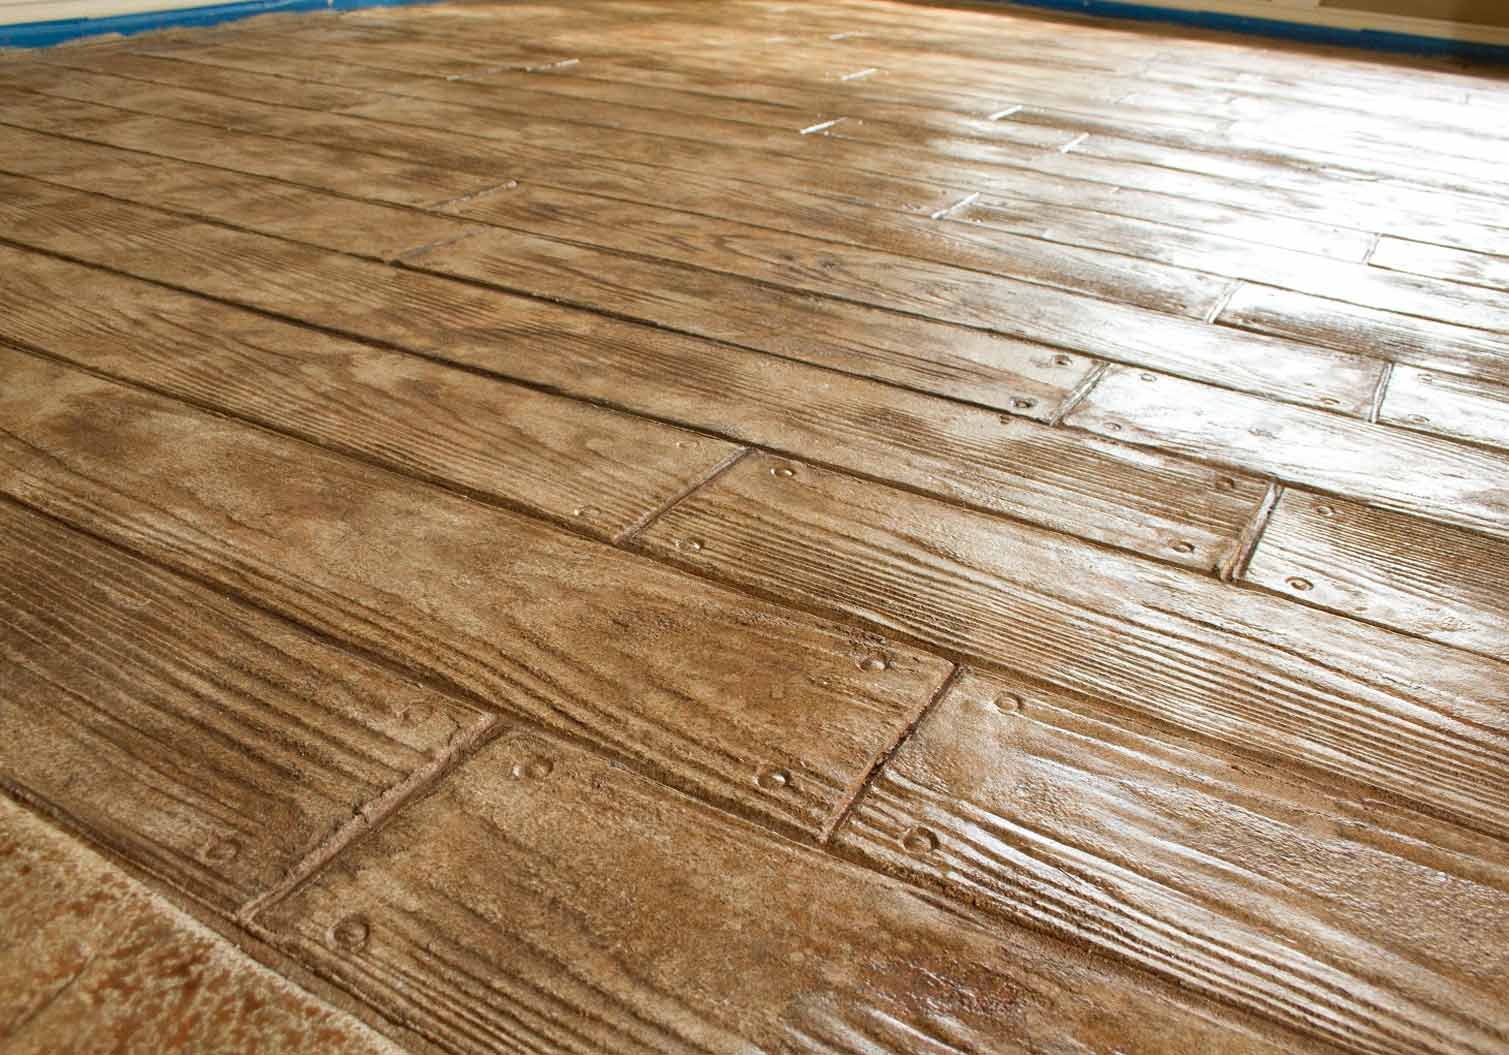 Kitchen Tile Hardwood Floor Stamped Concrete